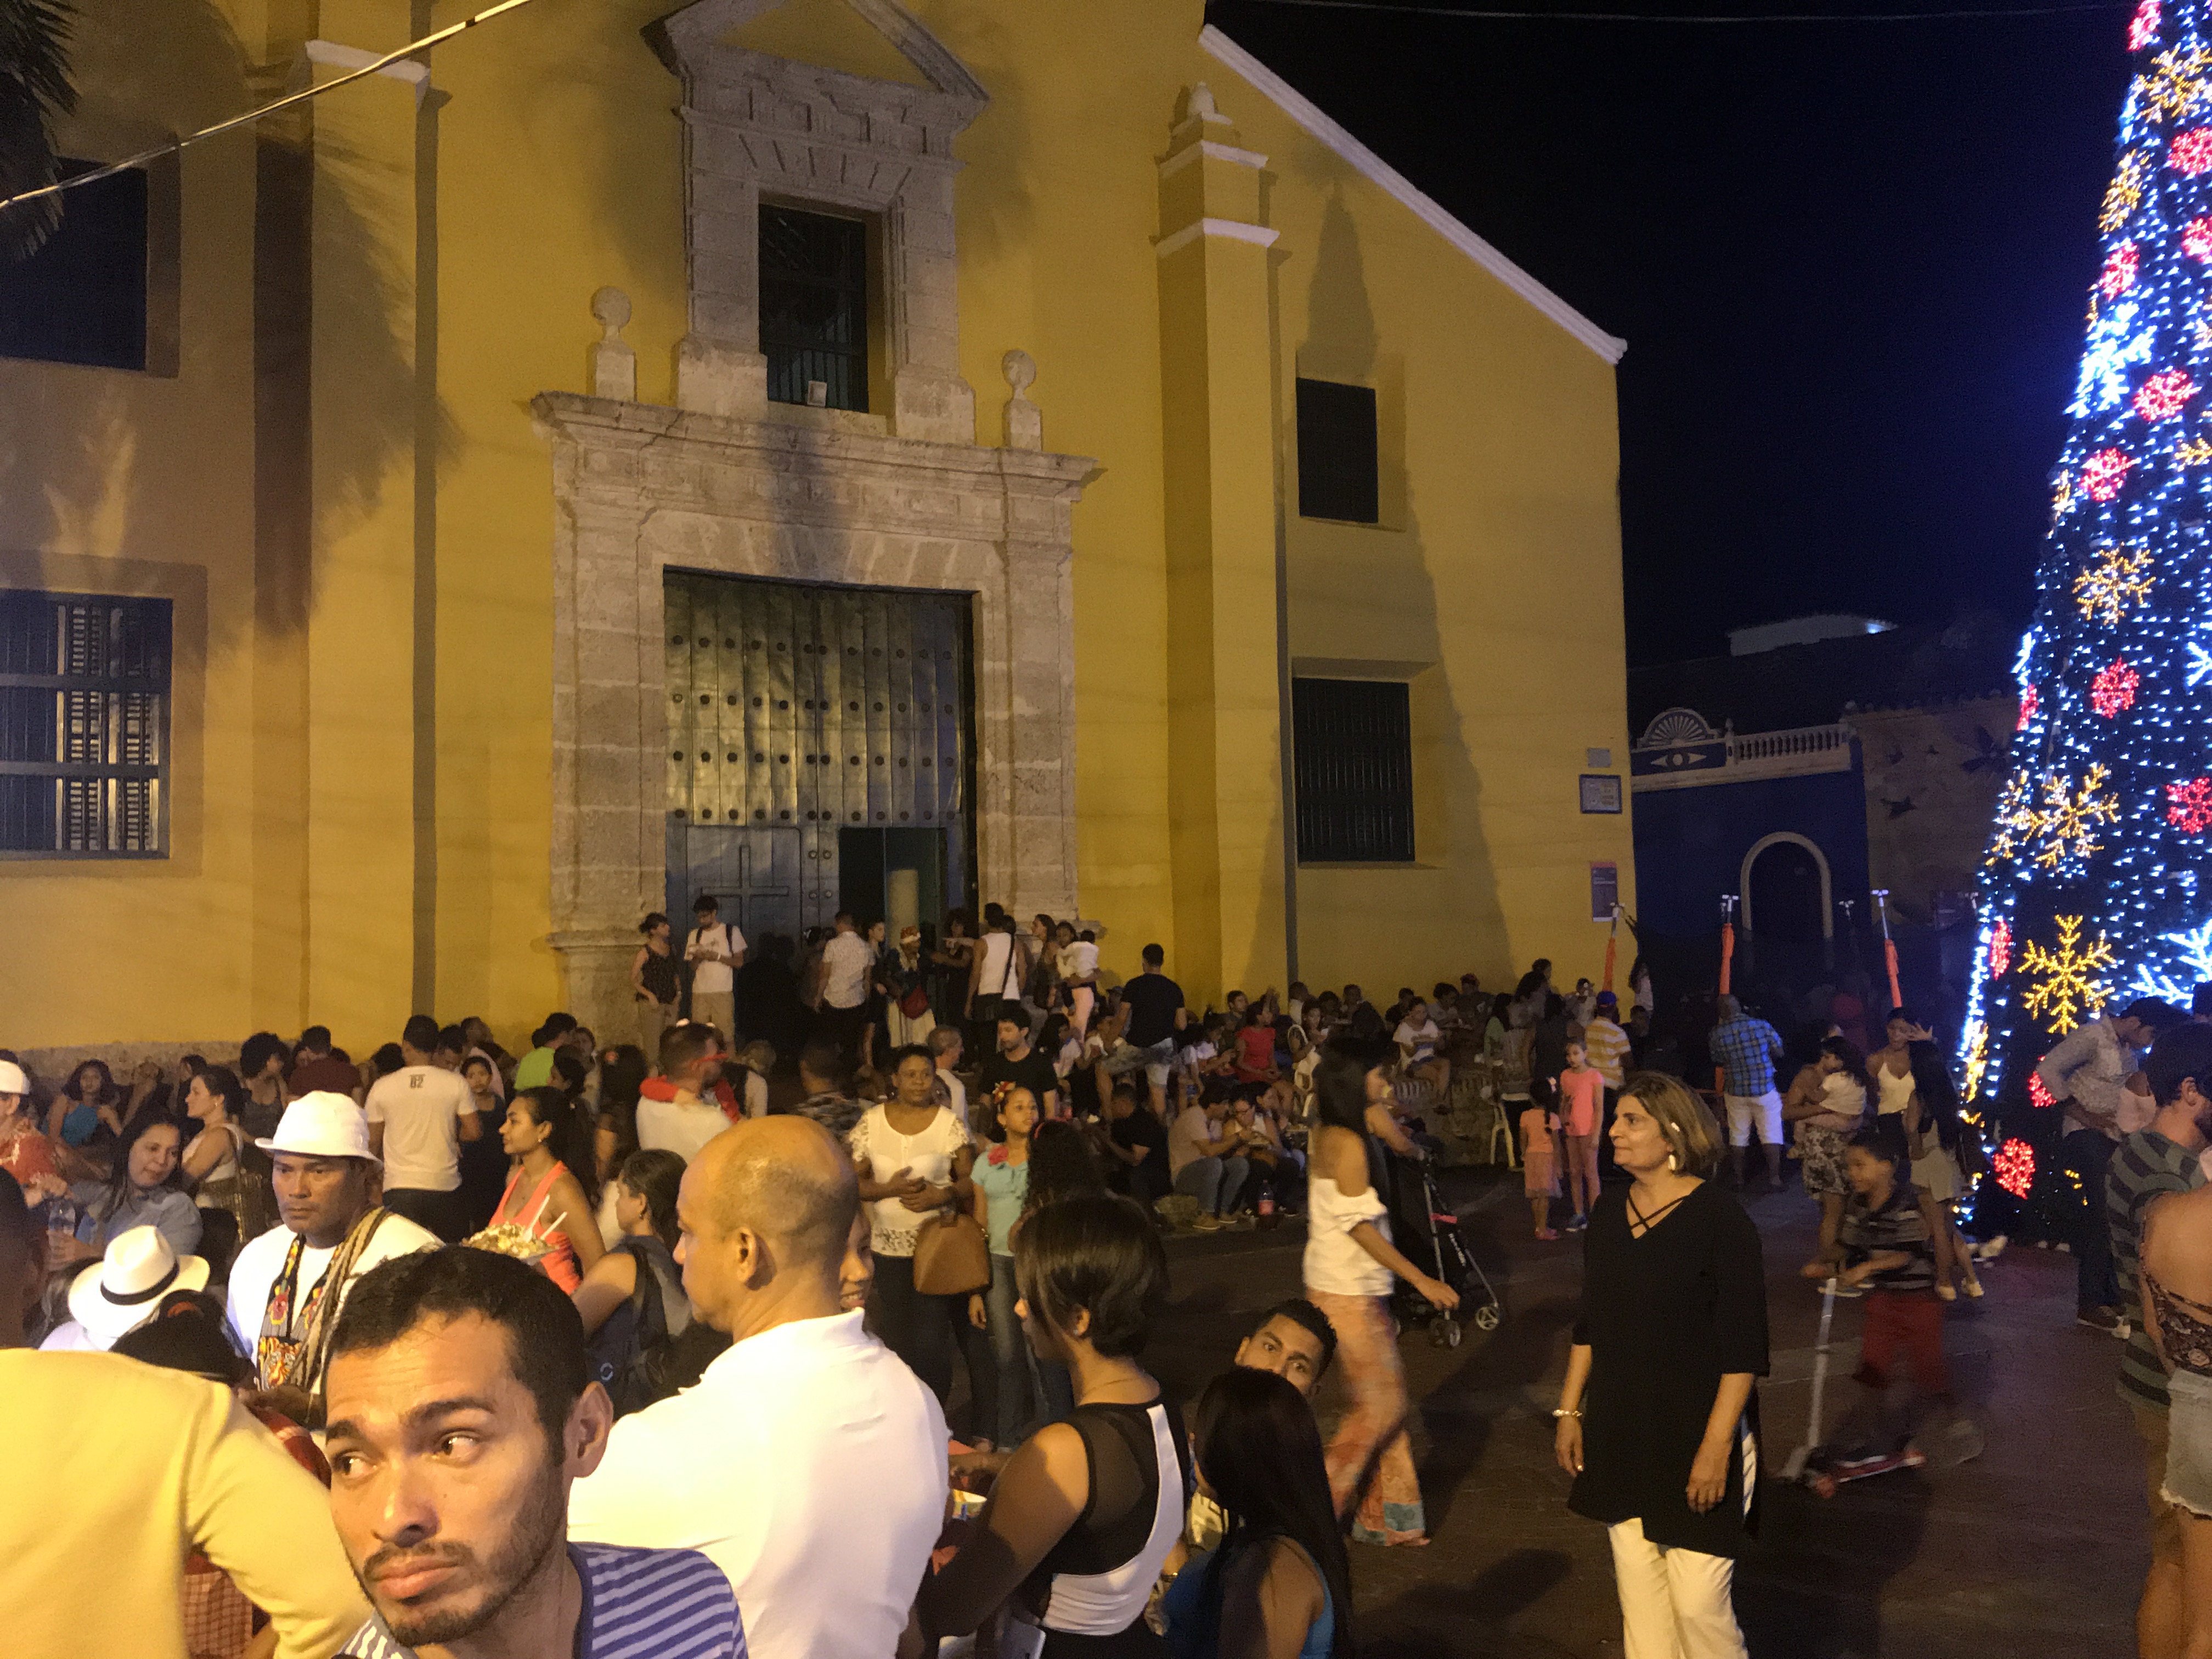 Crowds outside Iglesia Trinidad in Getsemani